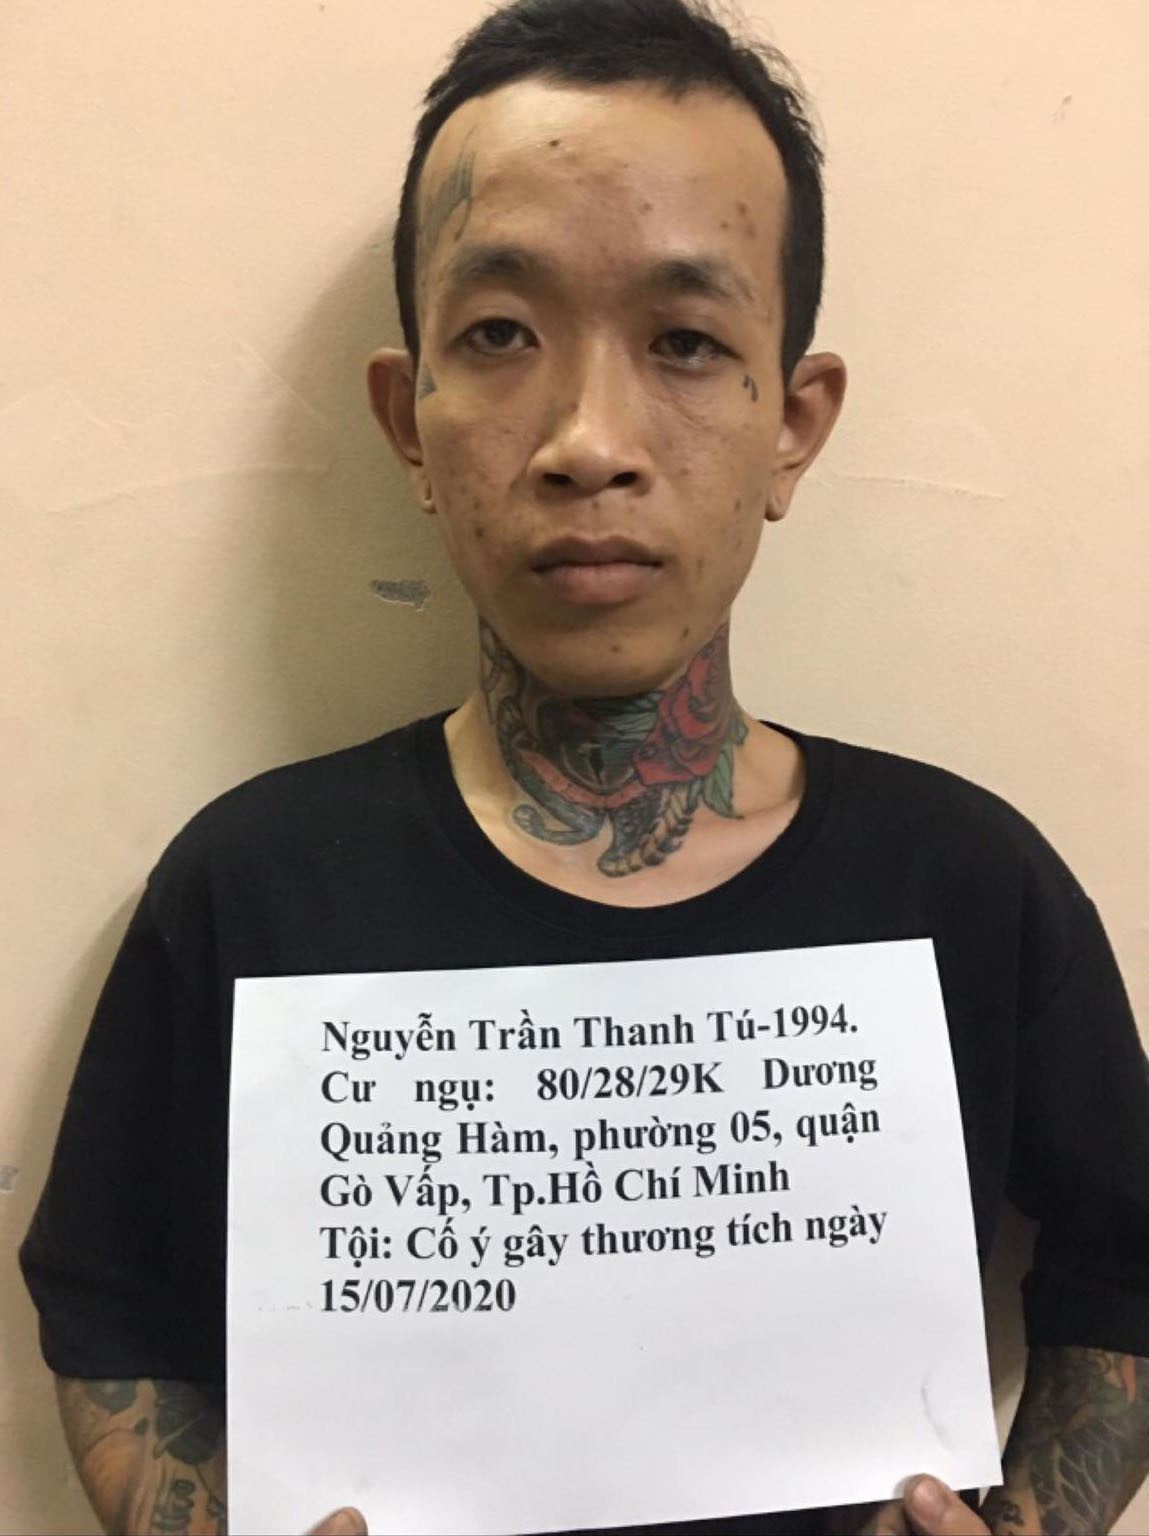 Truy nã gã thợ xăm đánh chém người ở Sài Gòn - Ảnh 1.